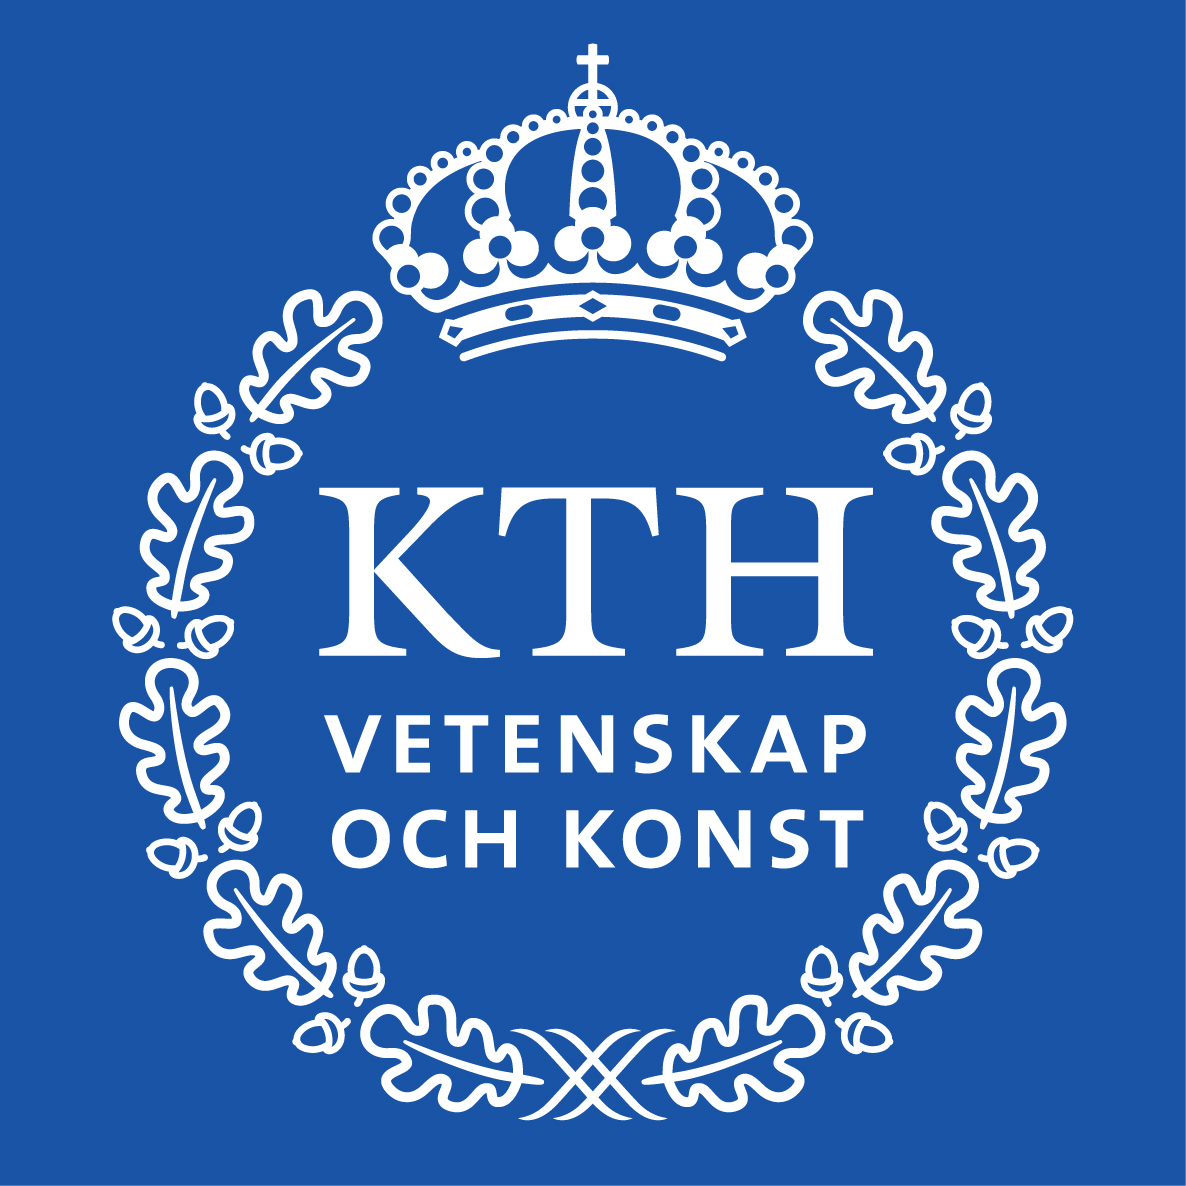 Féléves szakmai gyakorlat a Royal Institute of Technology (KTH) Stockholm Gyártástechnológia Tanszékén